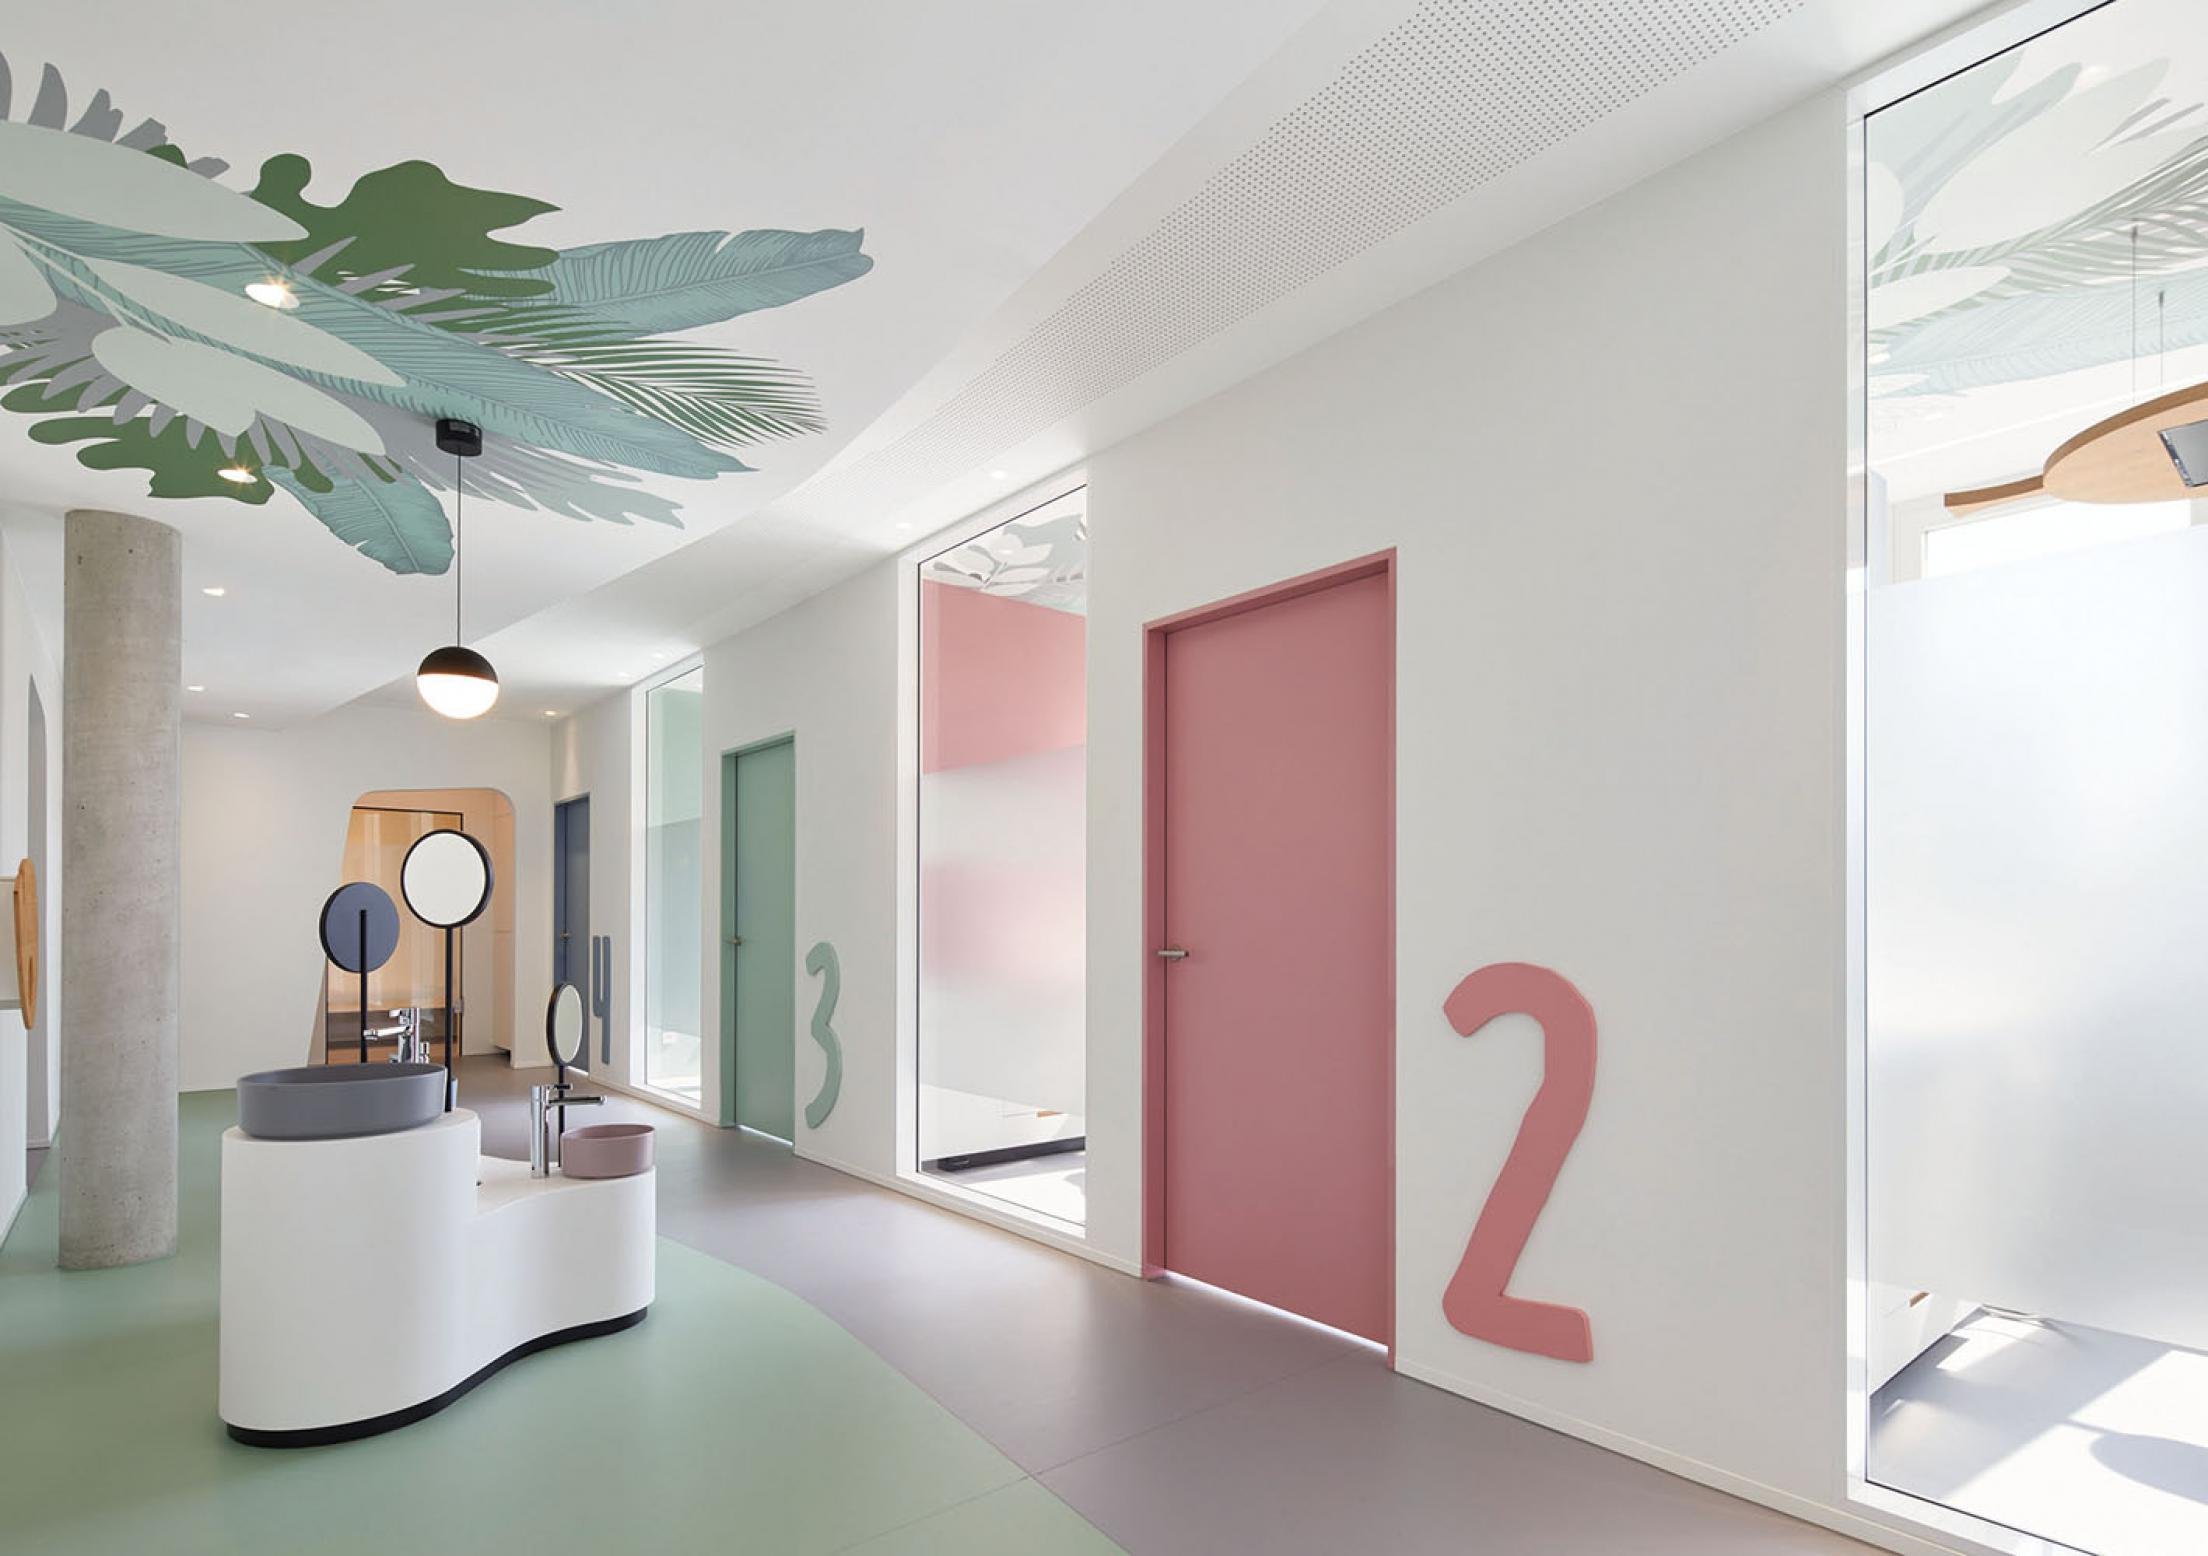 Клиника идея. Цветовое решение стен в больницах. Оформление клиники цветы. Вывеска дизайн студии интерьера. Больница 54 сайт